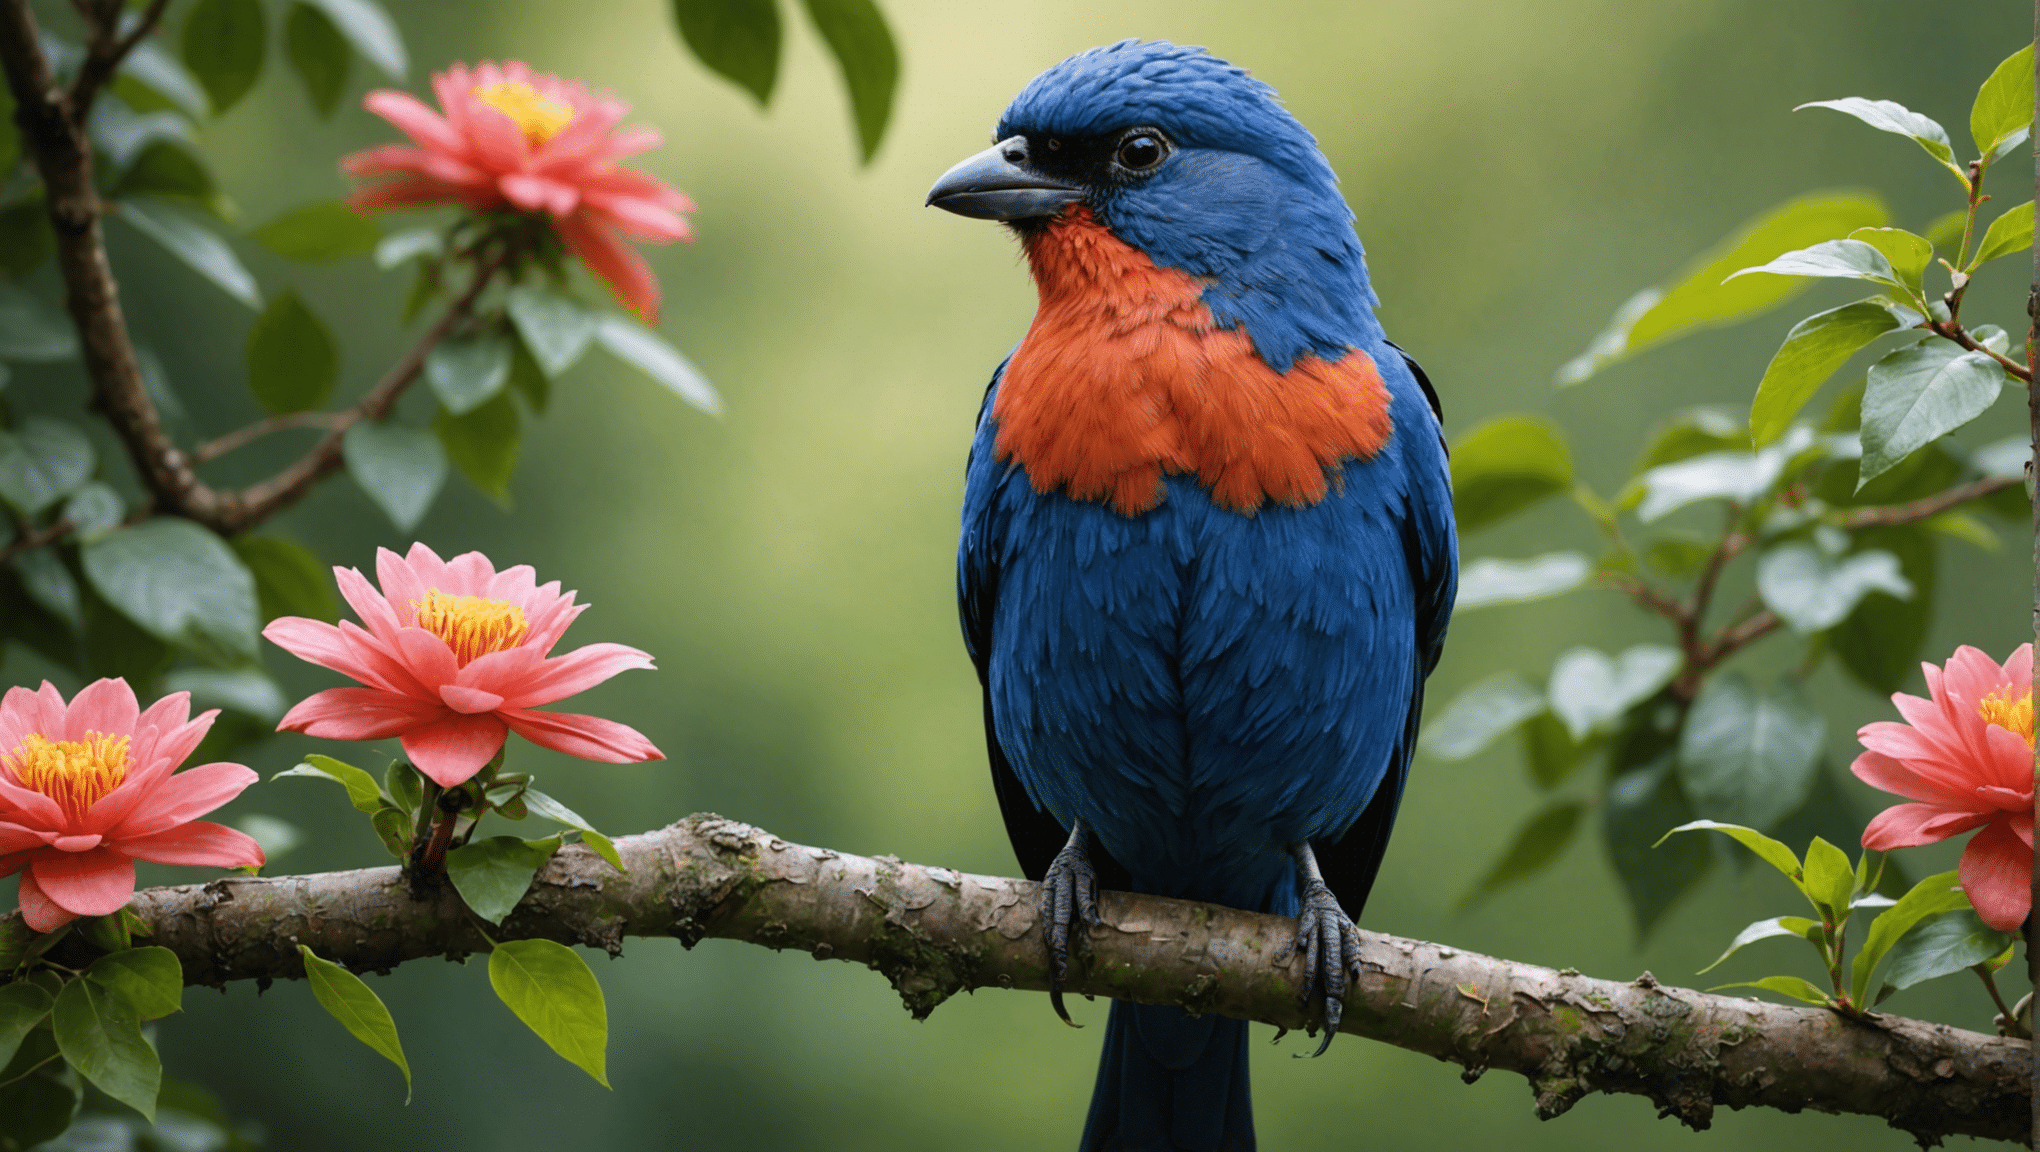 les oiseaux moches sont-ils vraiment beaux ? découvrez-le dans cette exploration fascinante de la beauté cachée de la nature et de la vérité surprenante derrière la beauté d'oiseaux apparemment laids.